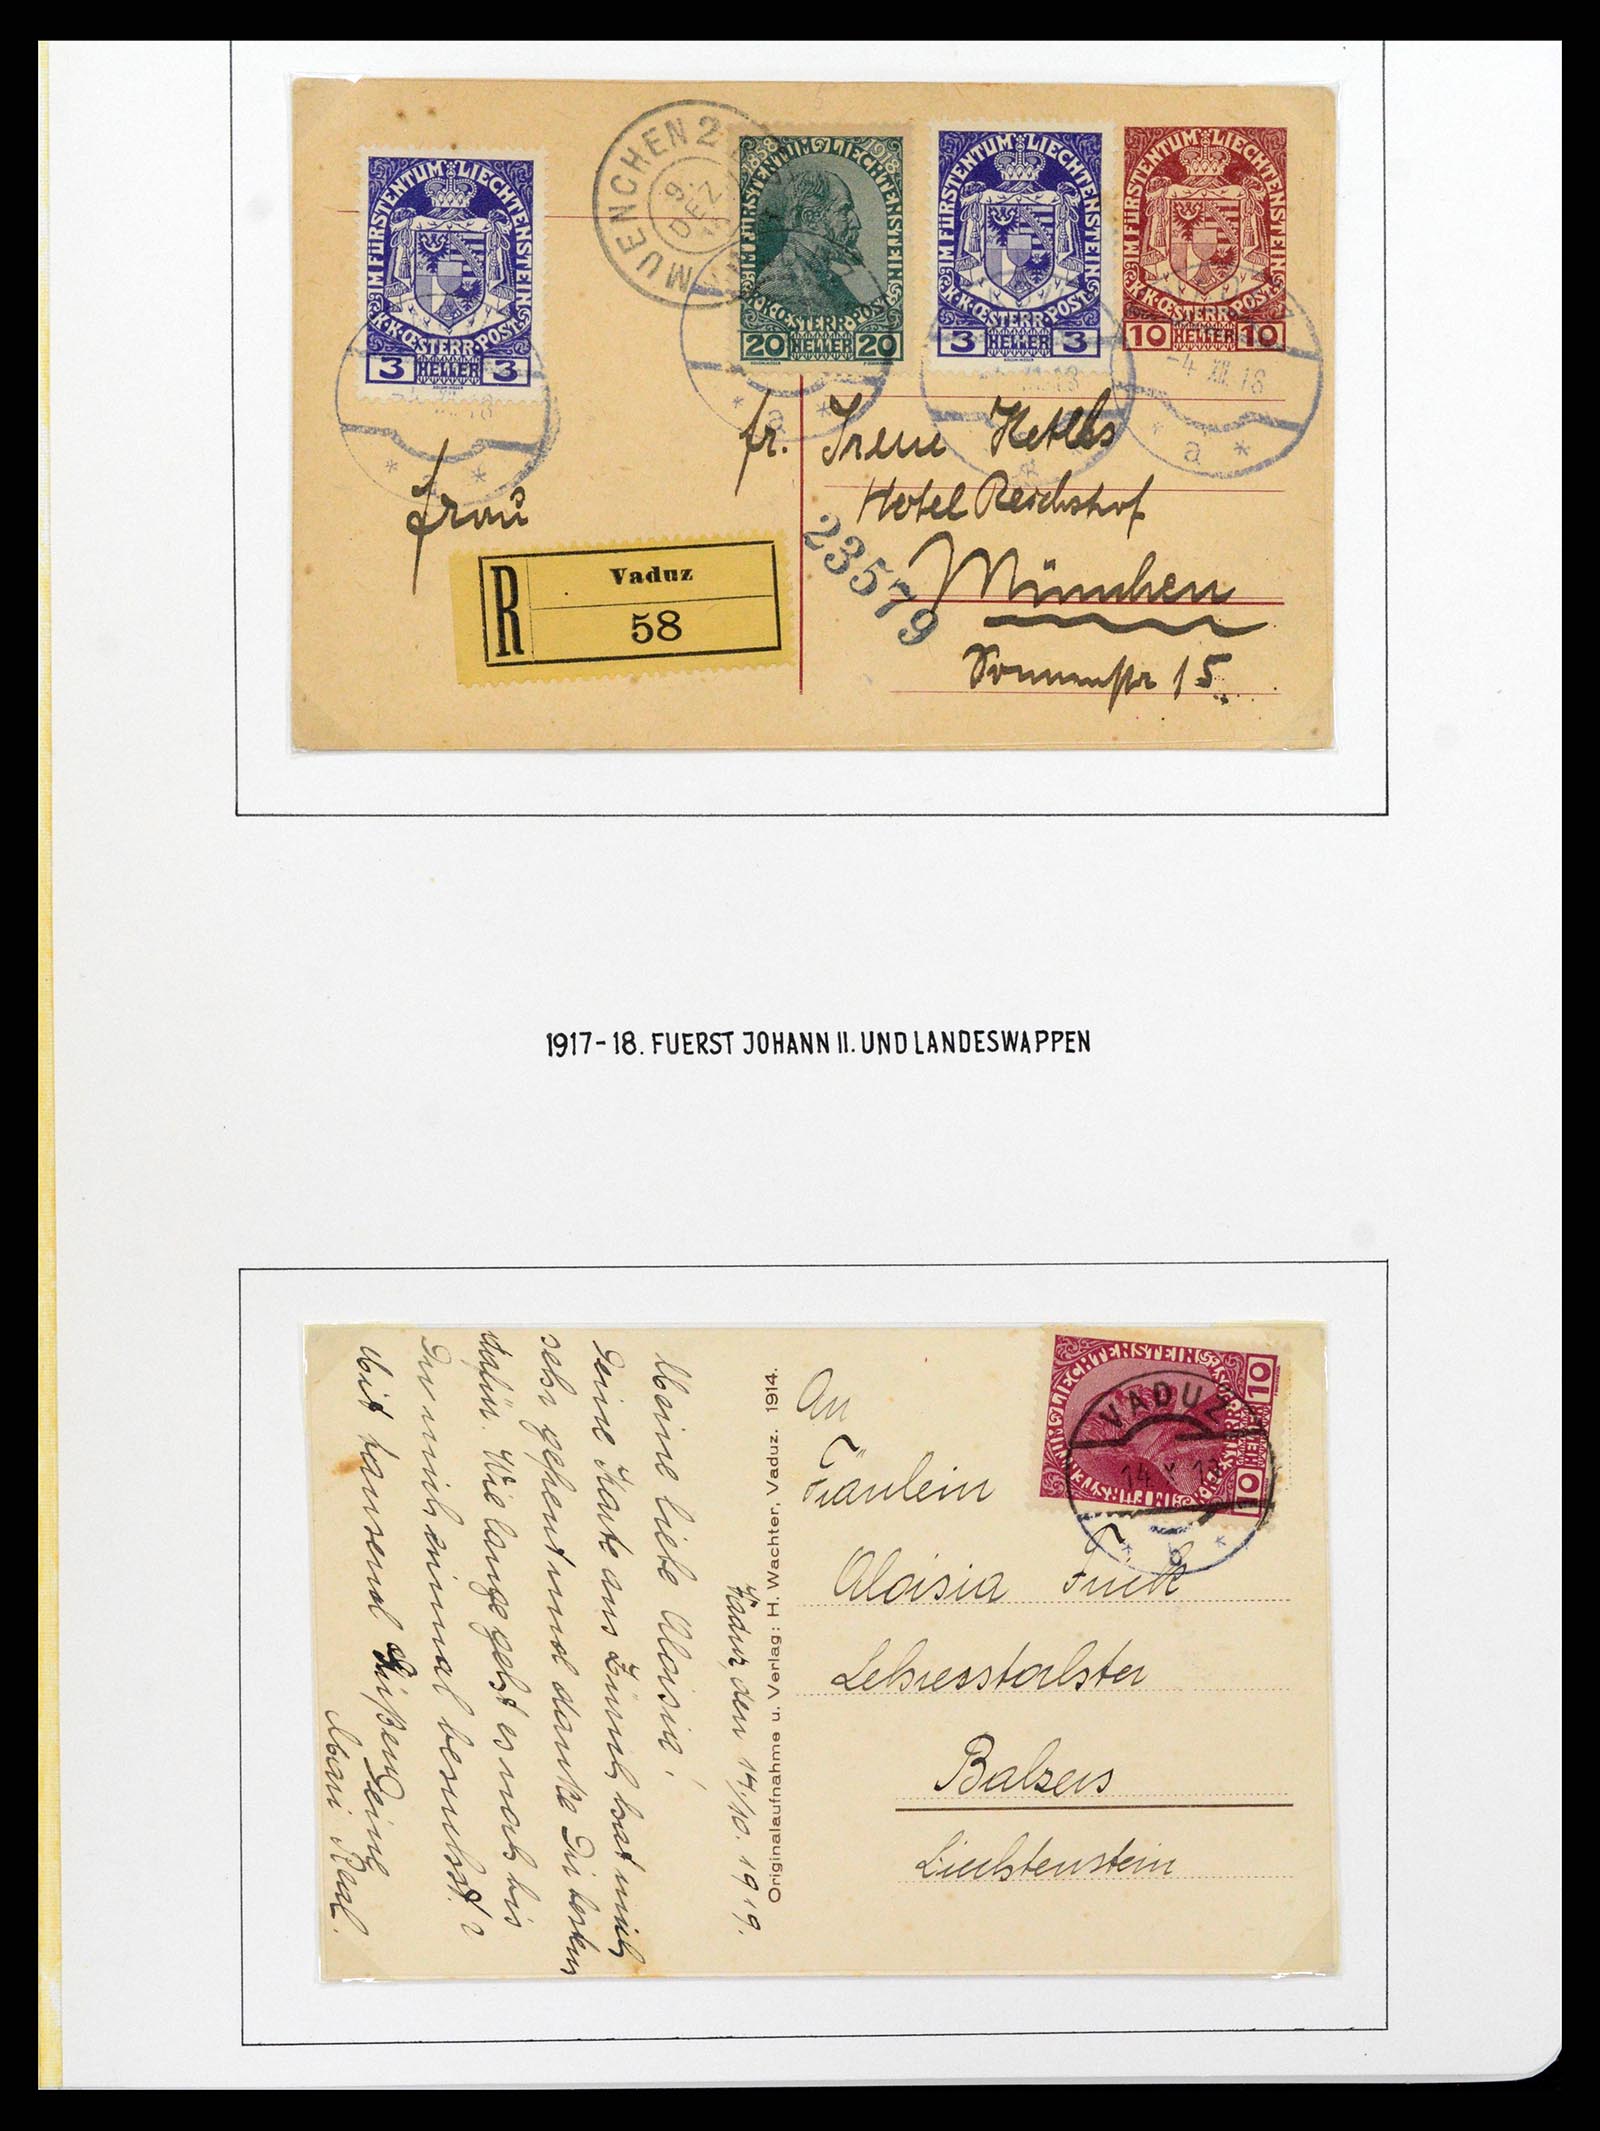 37150 0025 - Stamp collection 37150 Liechtenstein supercollection 1912-1962.